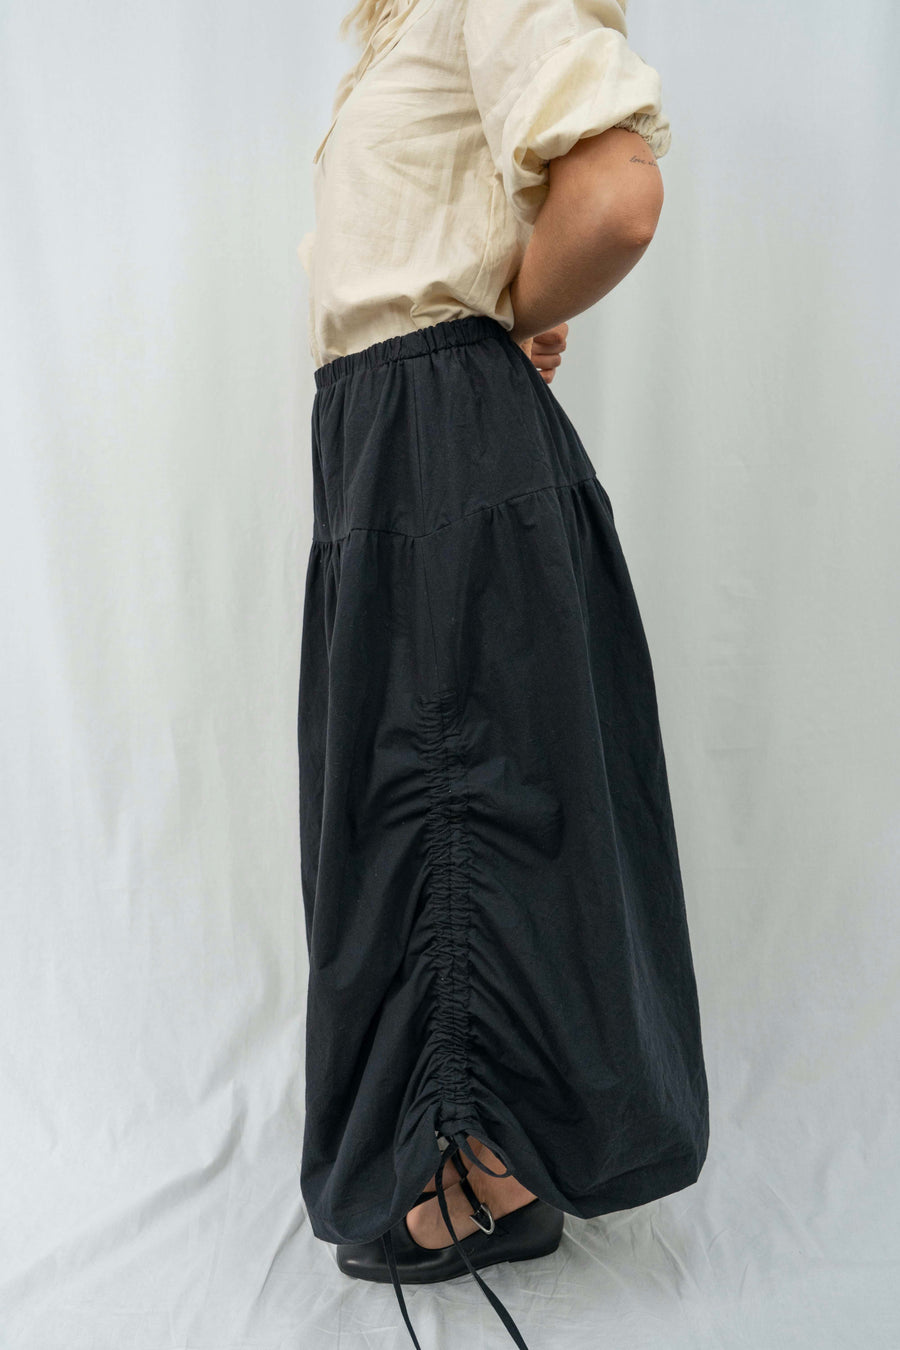 Savanna skirt